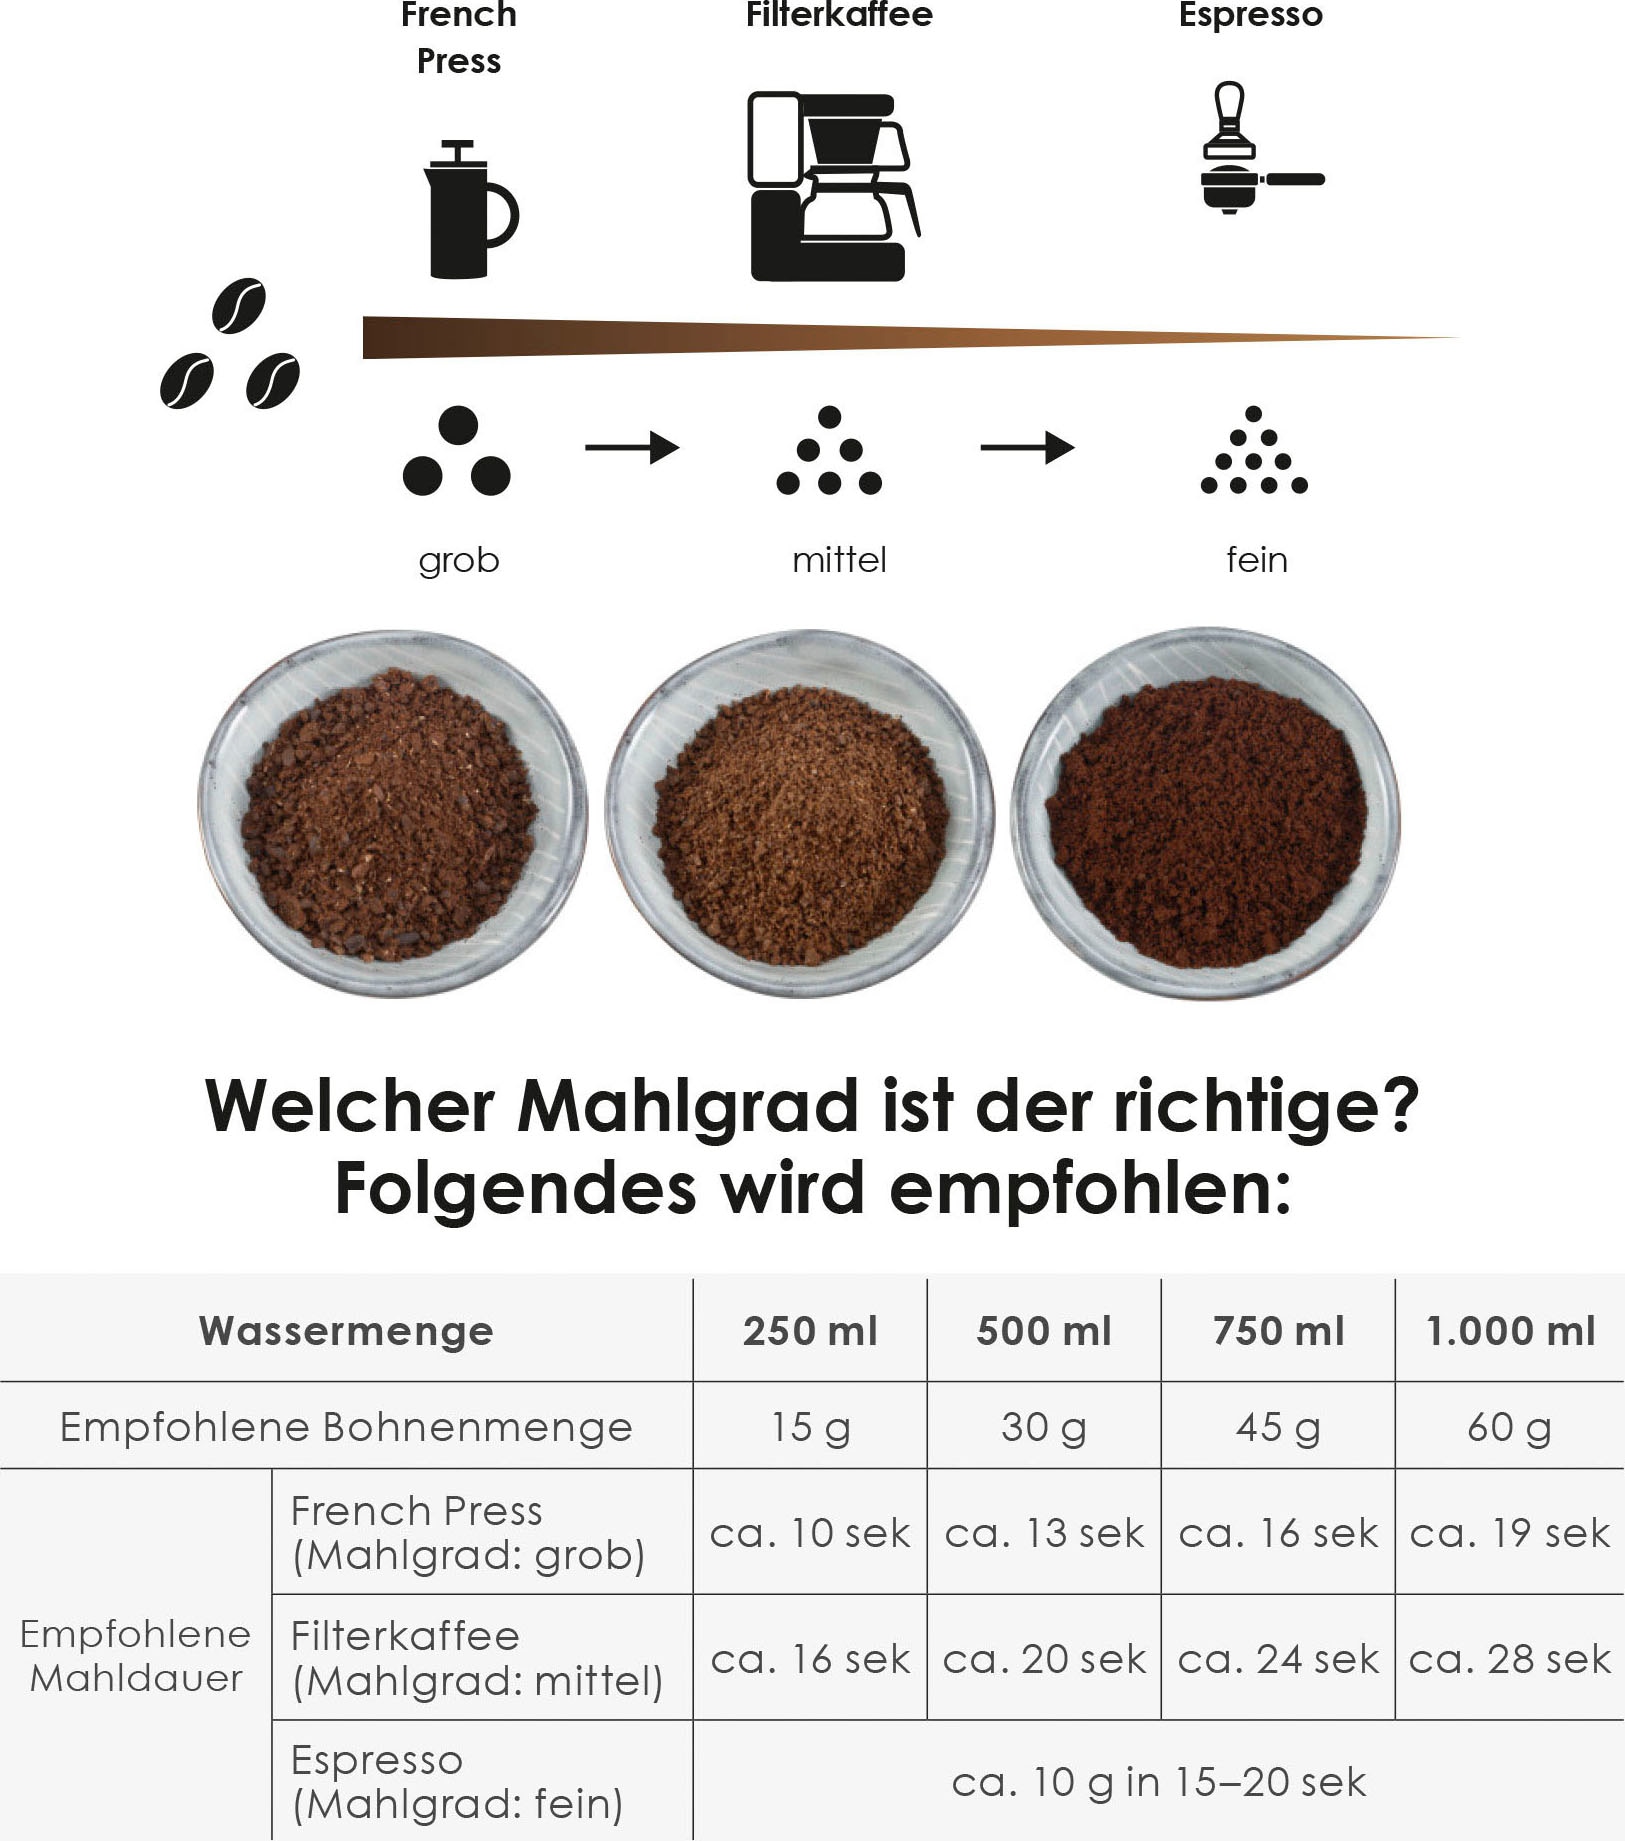 Melitta Kaffeemühle »amigo® 1029-01«, 170 W, Schlagmahlwerk, 60 g Bohnenbehälter